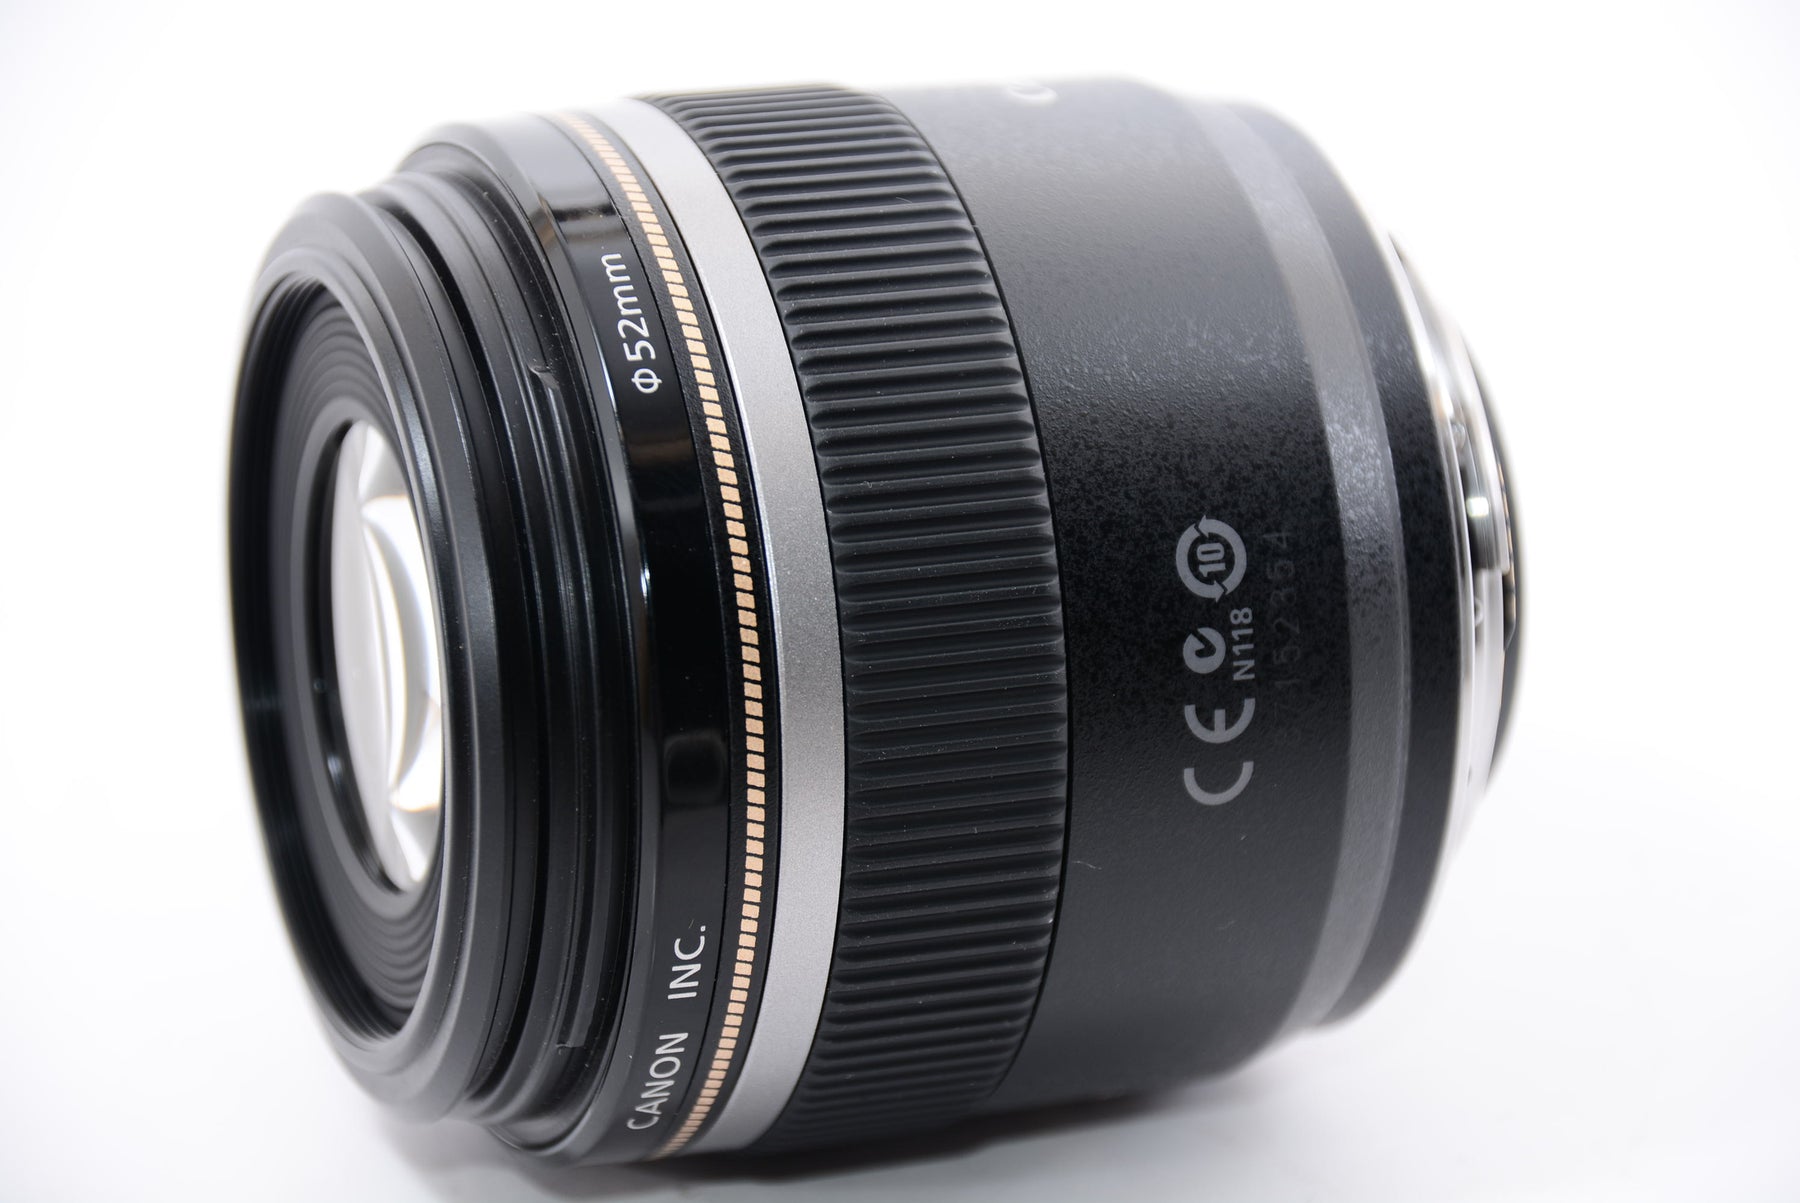 Canon 単焦点マクロレンズ EF-S60mm F2.8マクロ USM APS-C対応